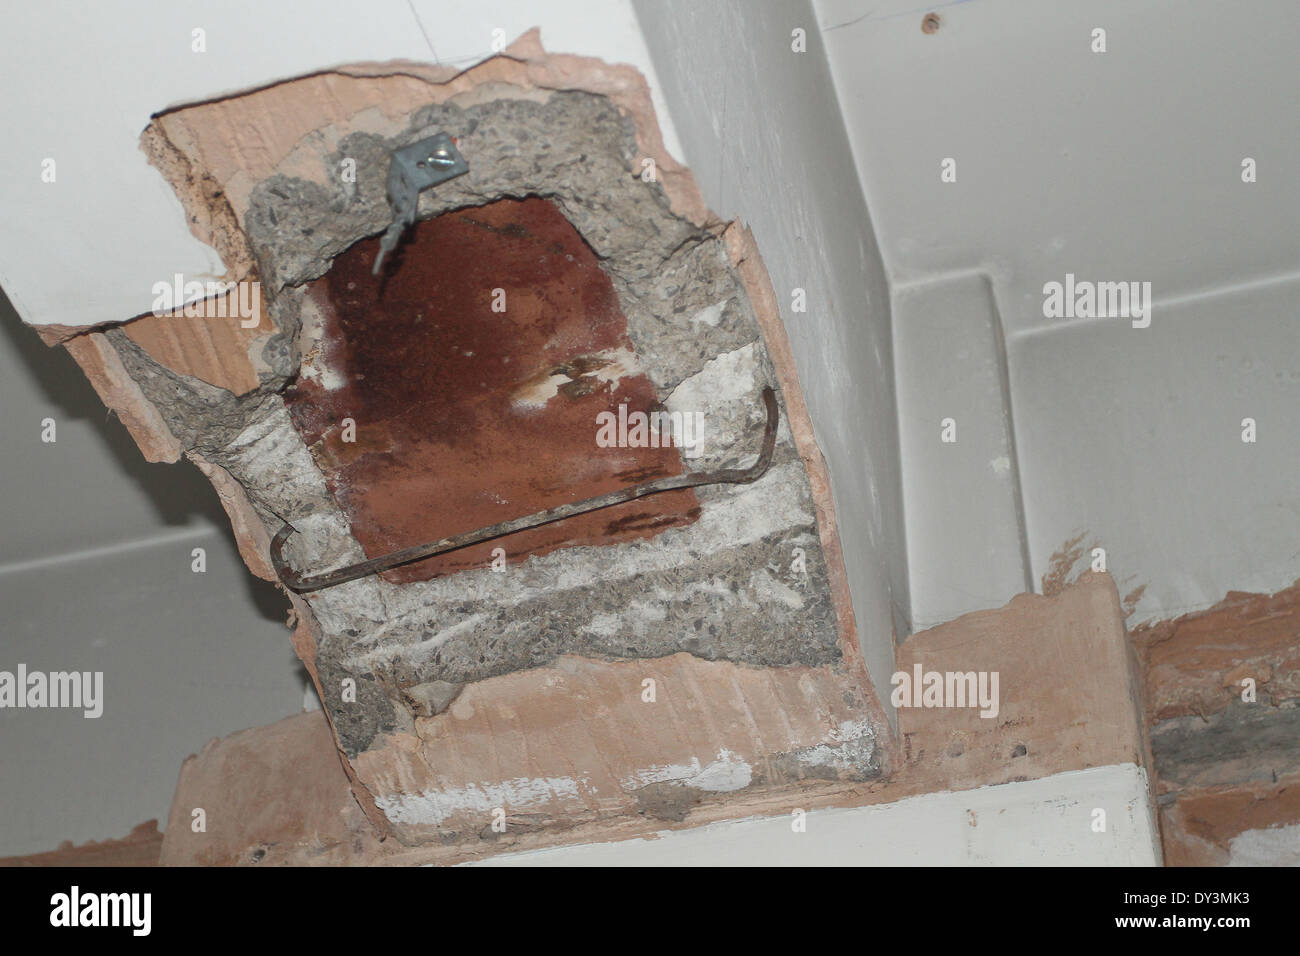 La section de béton plâtre enlevé pour permettre à un ingénieur en structures d'inspecter l'état d'un faisceau d'acier de janvier 2014 Banque D'Images